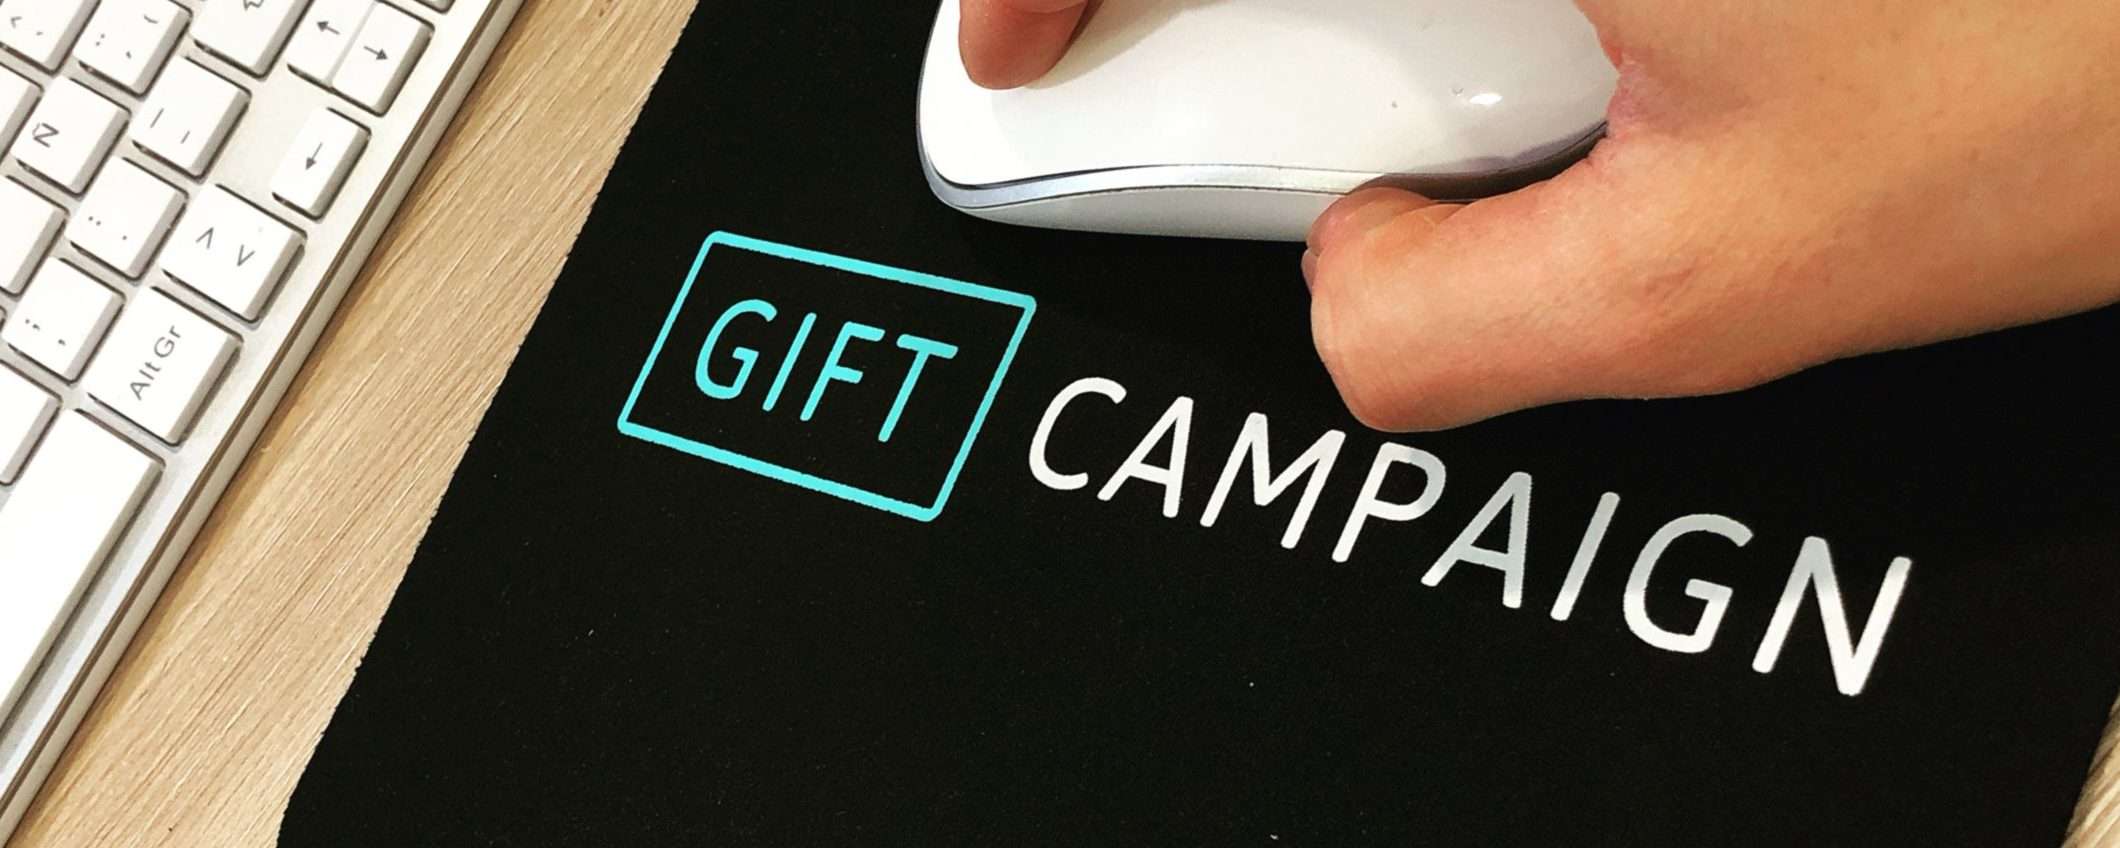 Gadget personalizzati Gift Campaign: dove, come e perché